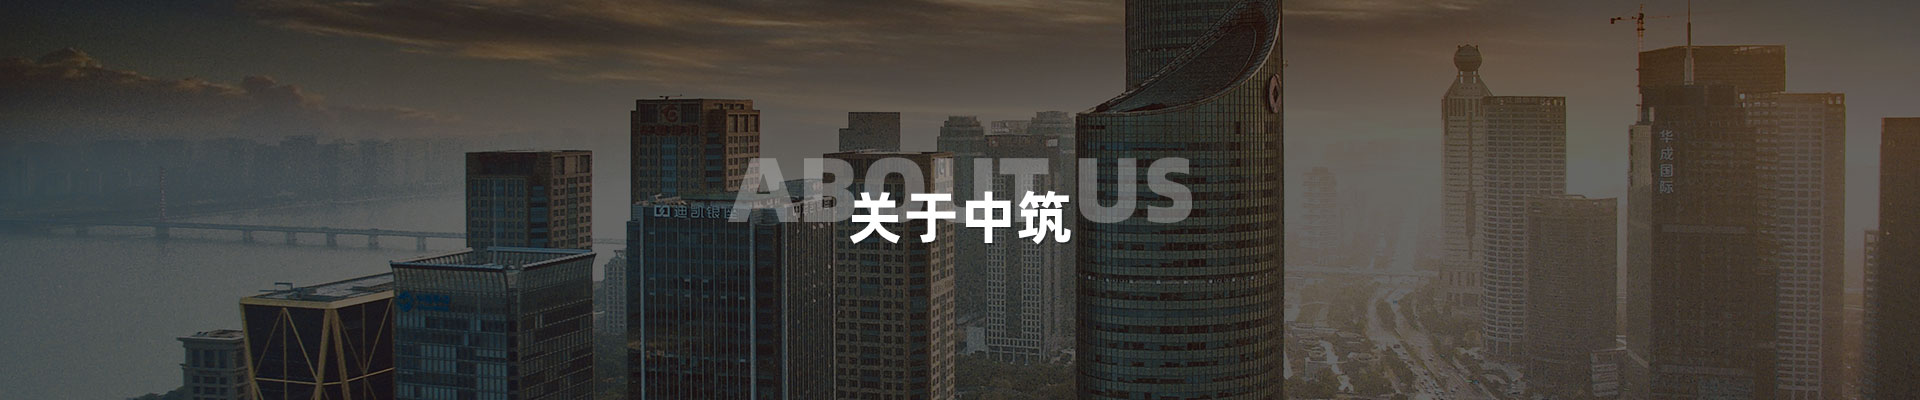 景觀亮化公司-深圳市中筑景觀亮化照明科技有限公司